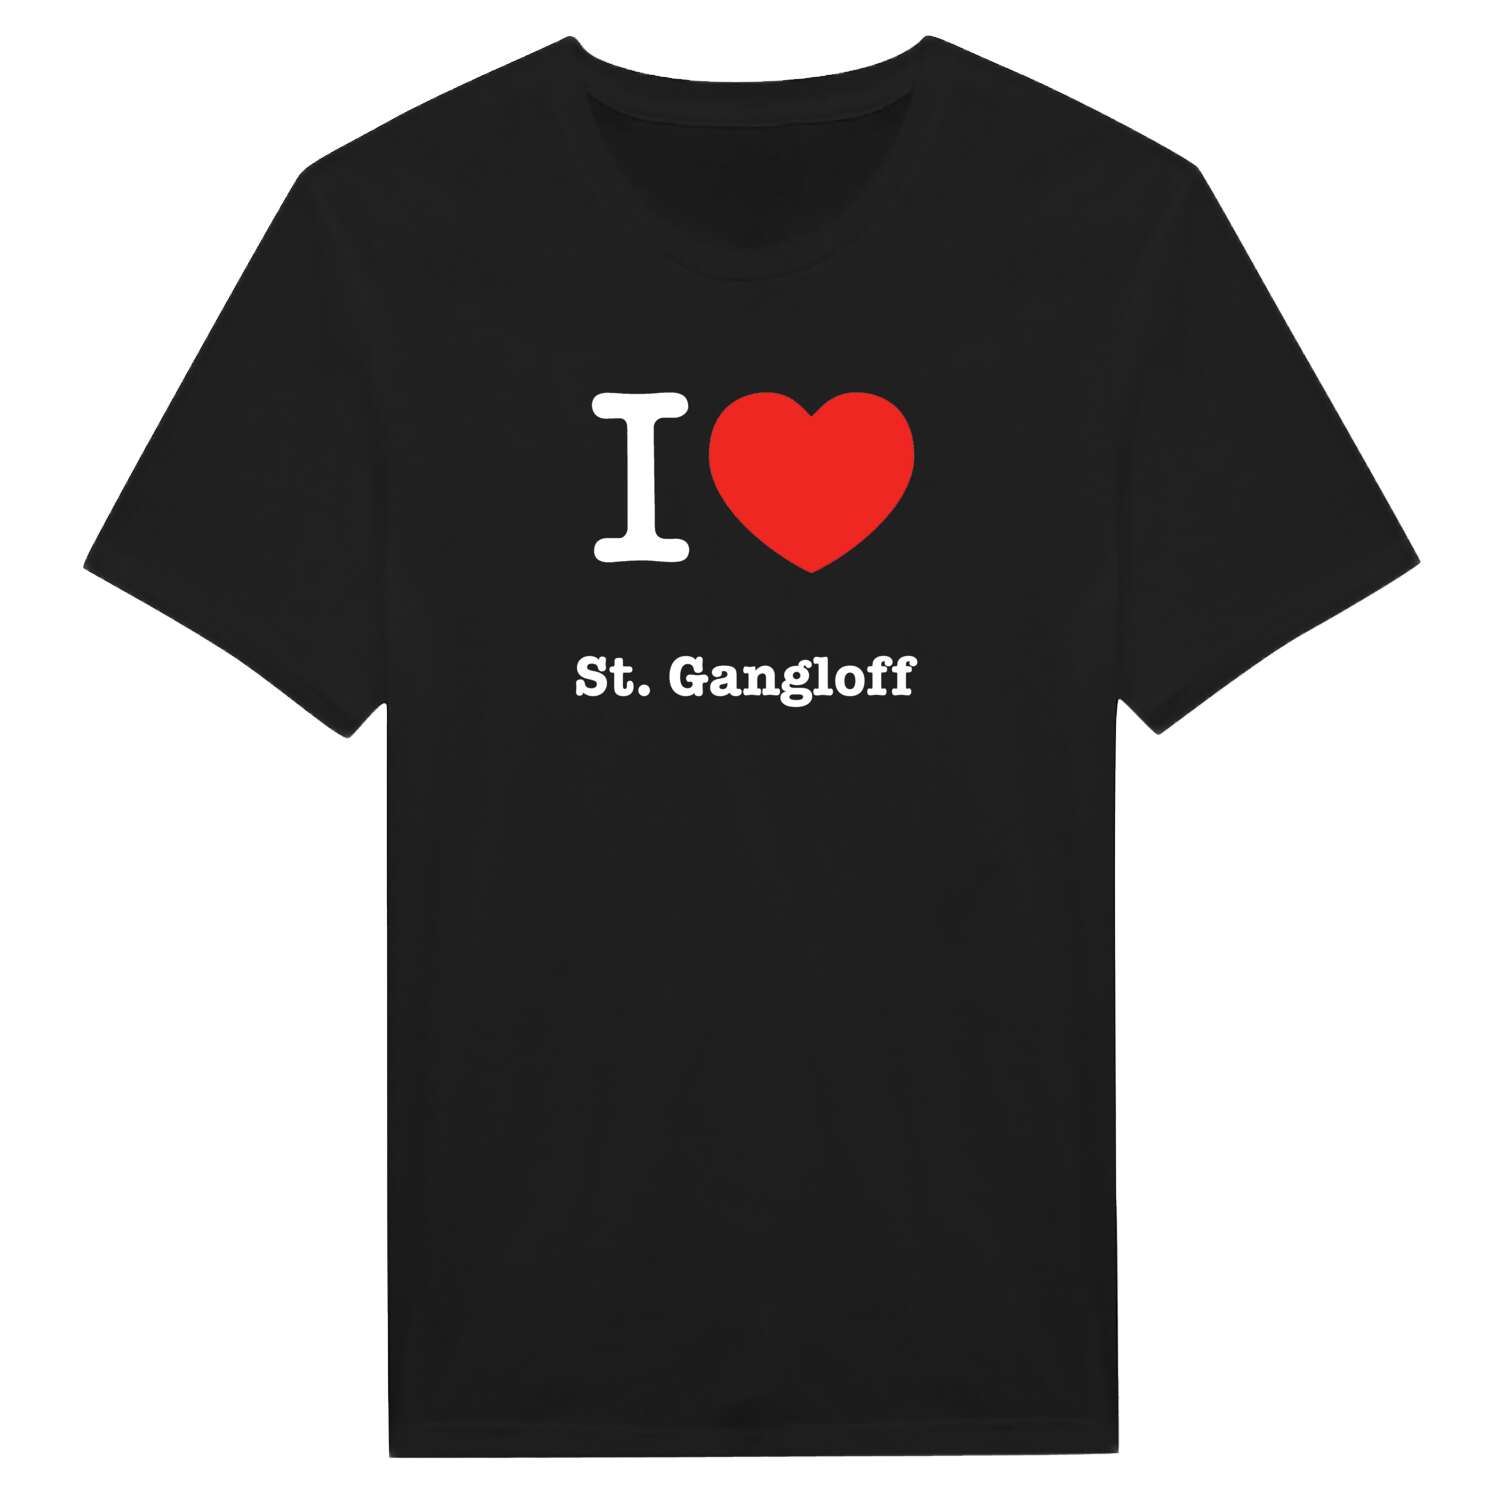 St. Gangloff T-Shirt »I love«